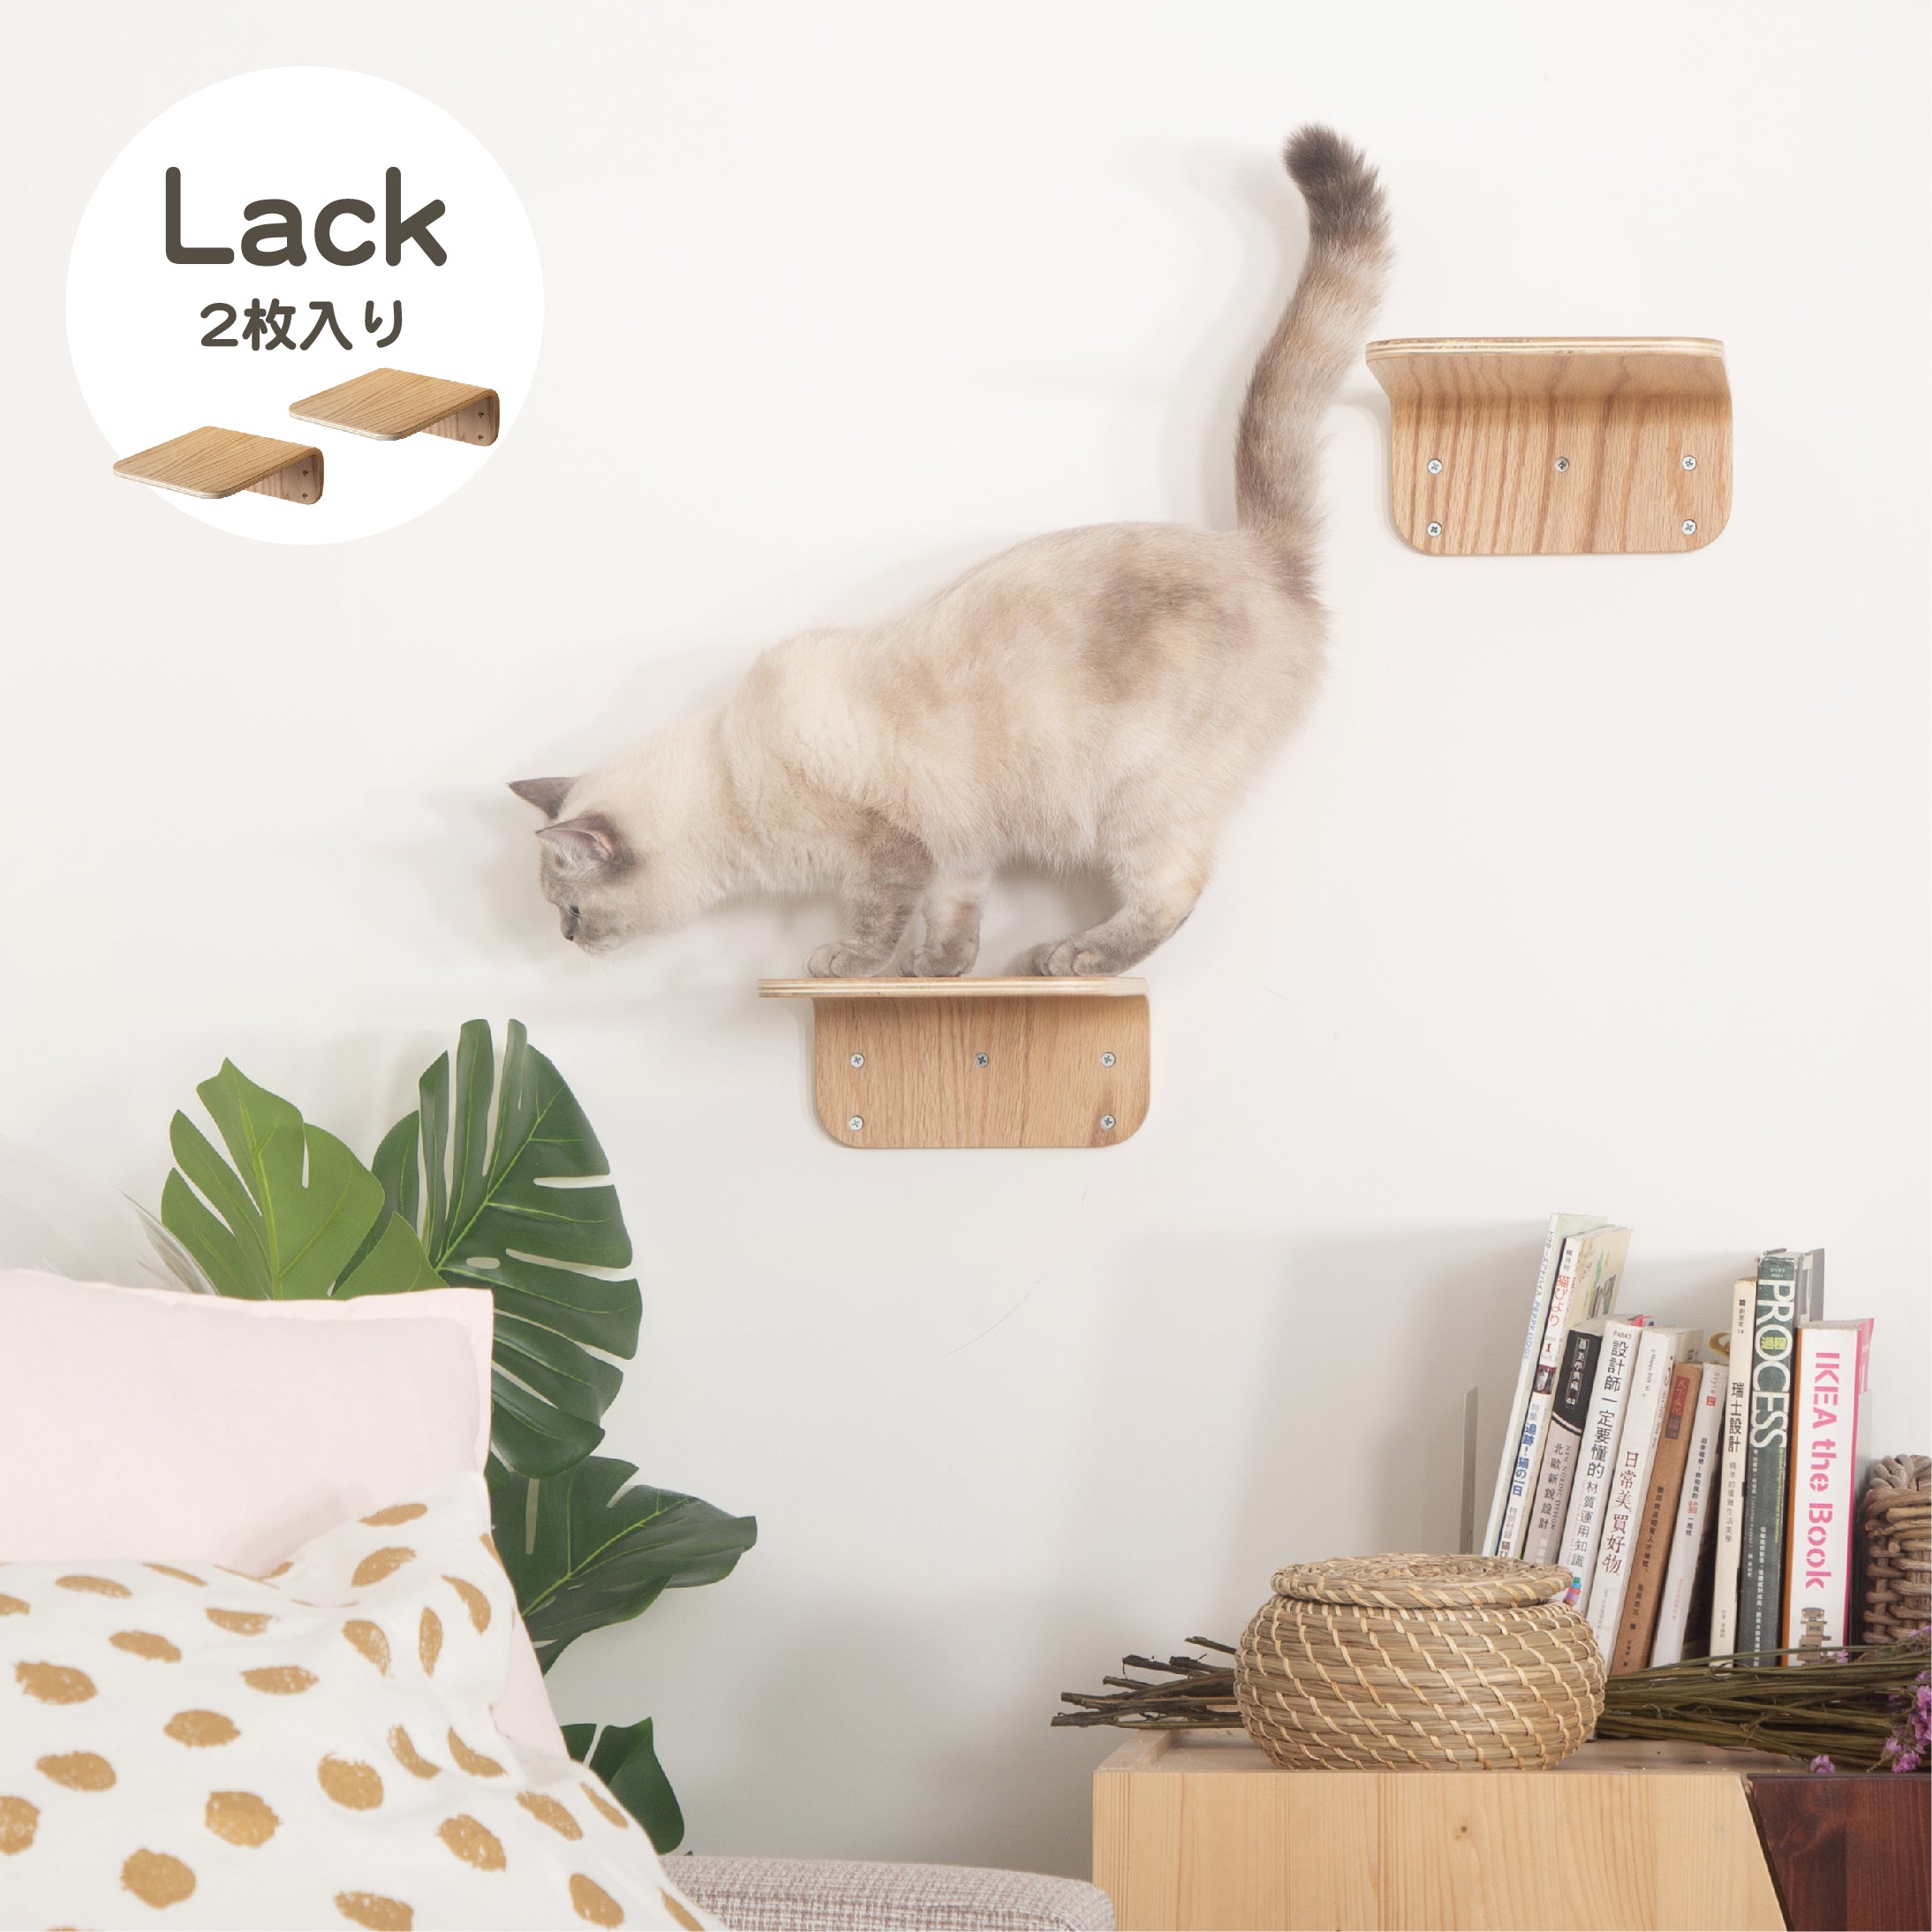 LACK　キャットステップ2枚セット。壁掛けタイプキャットタワー。長方形で木目色。コンパクトサイズでありながらしっかりネコの体重を支えてくれる。